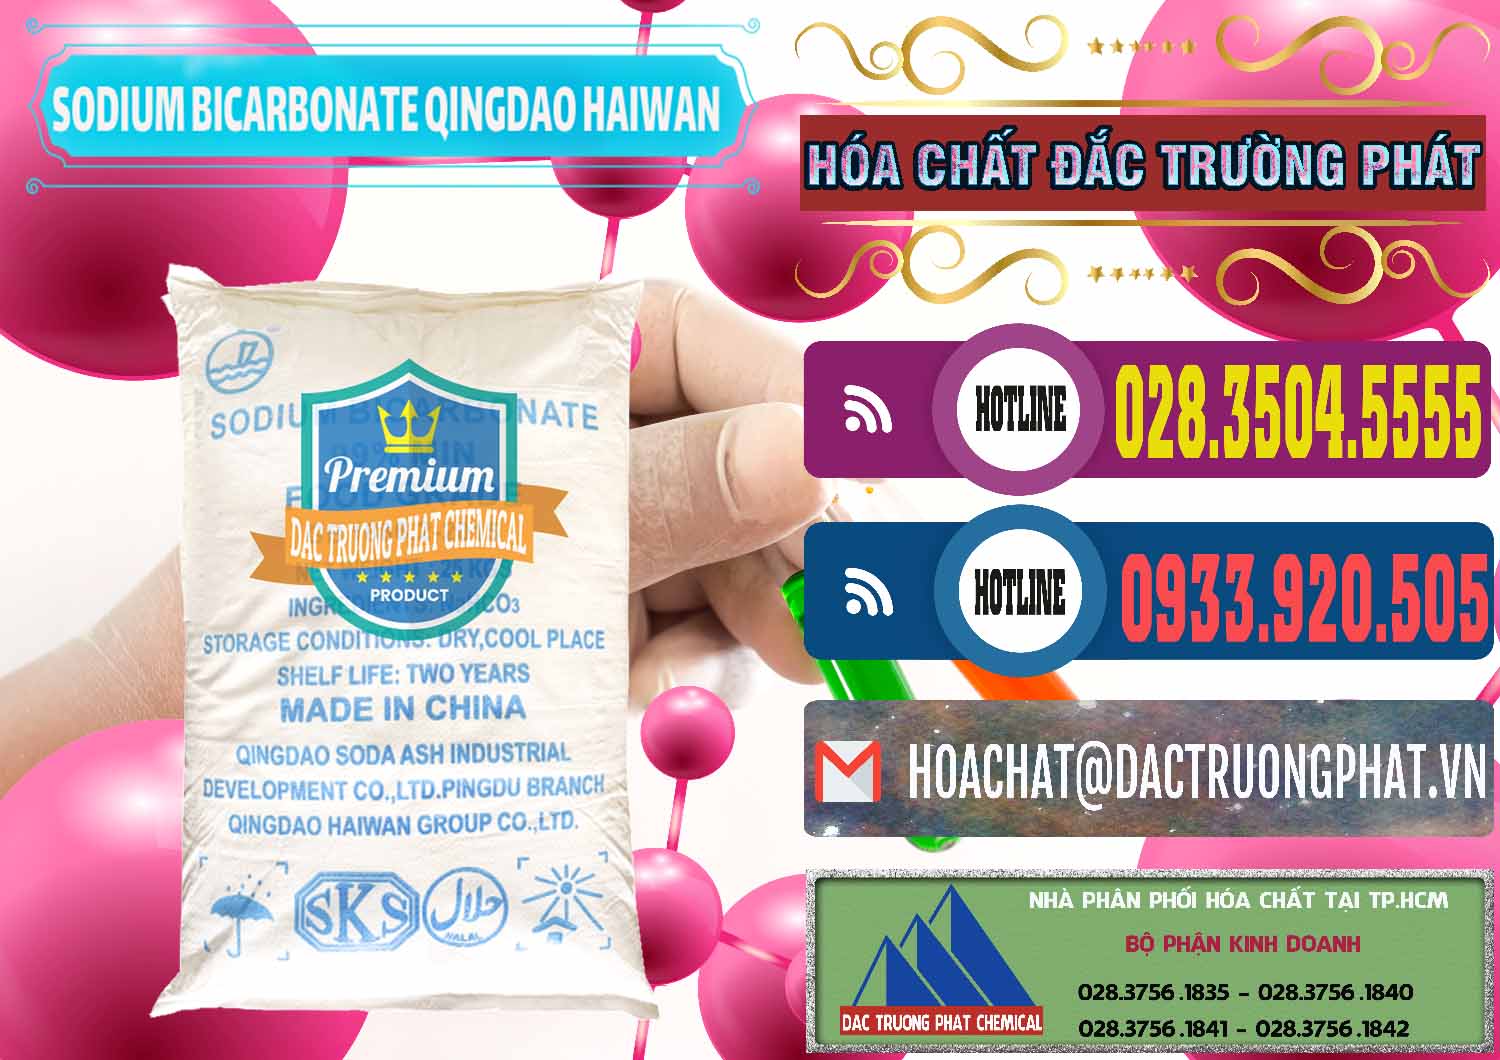 Nơi chuyên bán _ cung cấp Sodium Bicarbonate – Bicar NaHCO3 Food Grade Qingdao Haiwan Trung Quốc China - 0258 - Cty cung cấp - phân phối hóa chất tại TP.HCM - muabanhoachat.com.vn